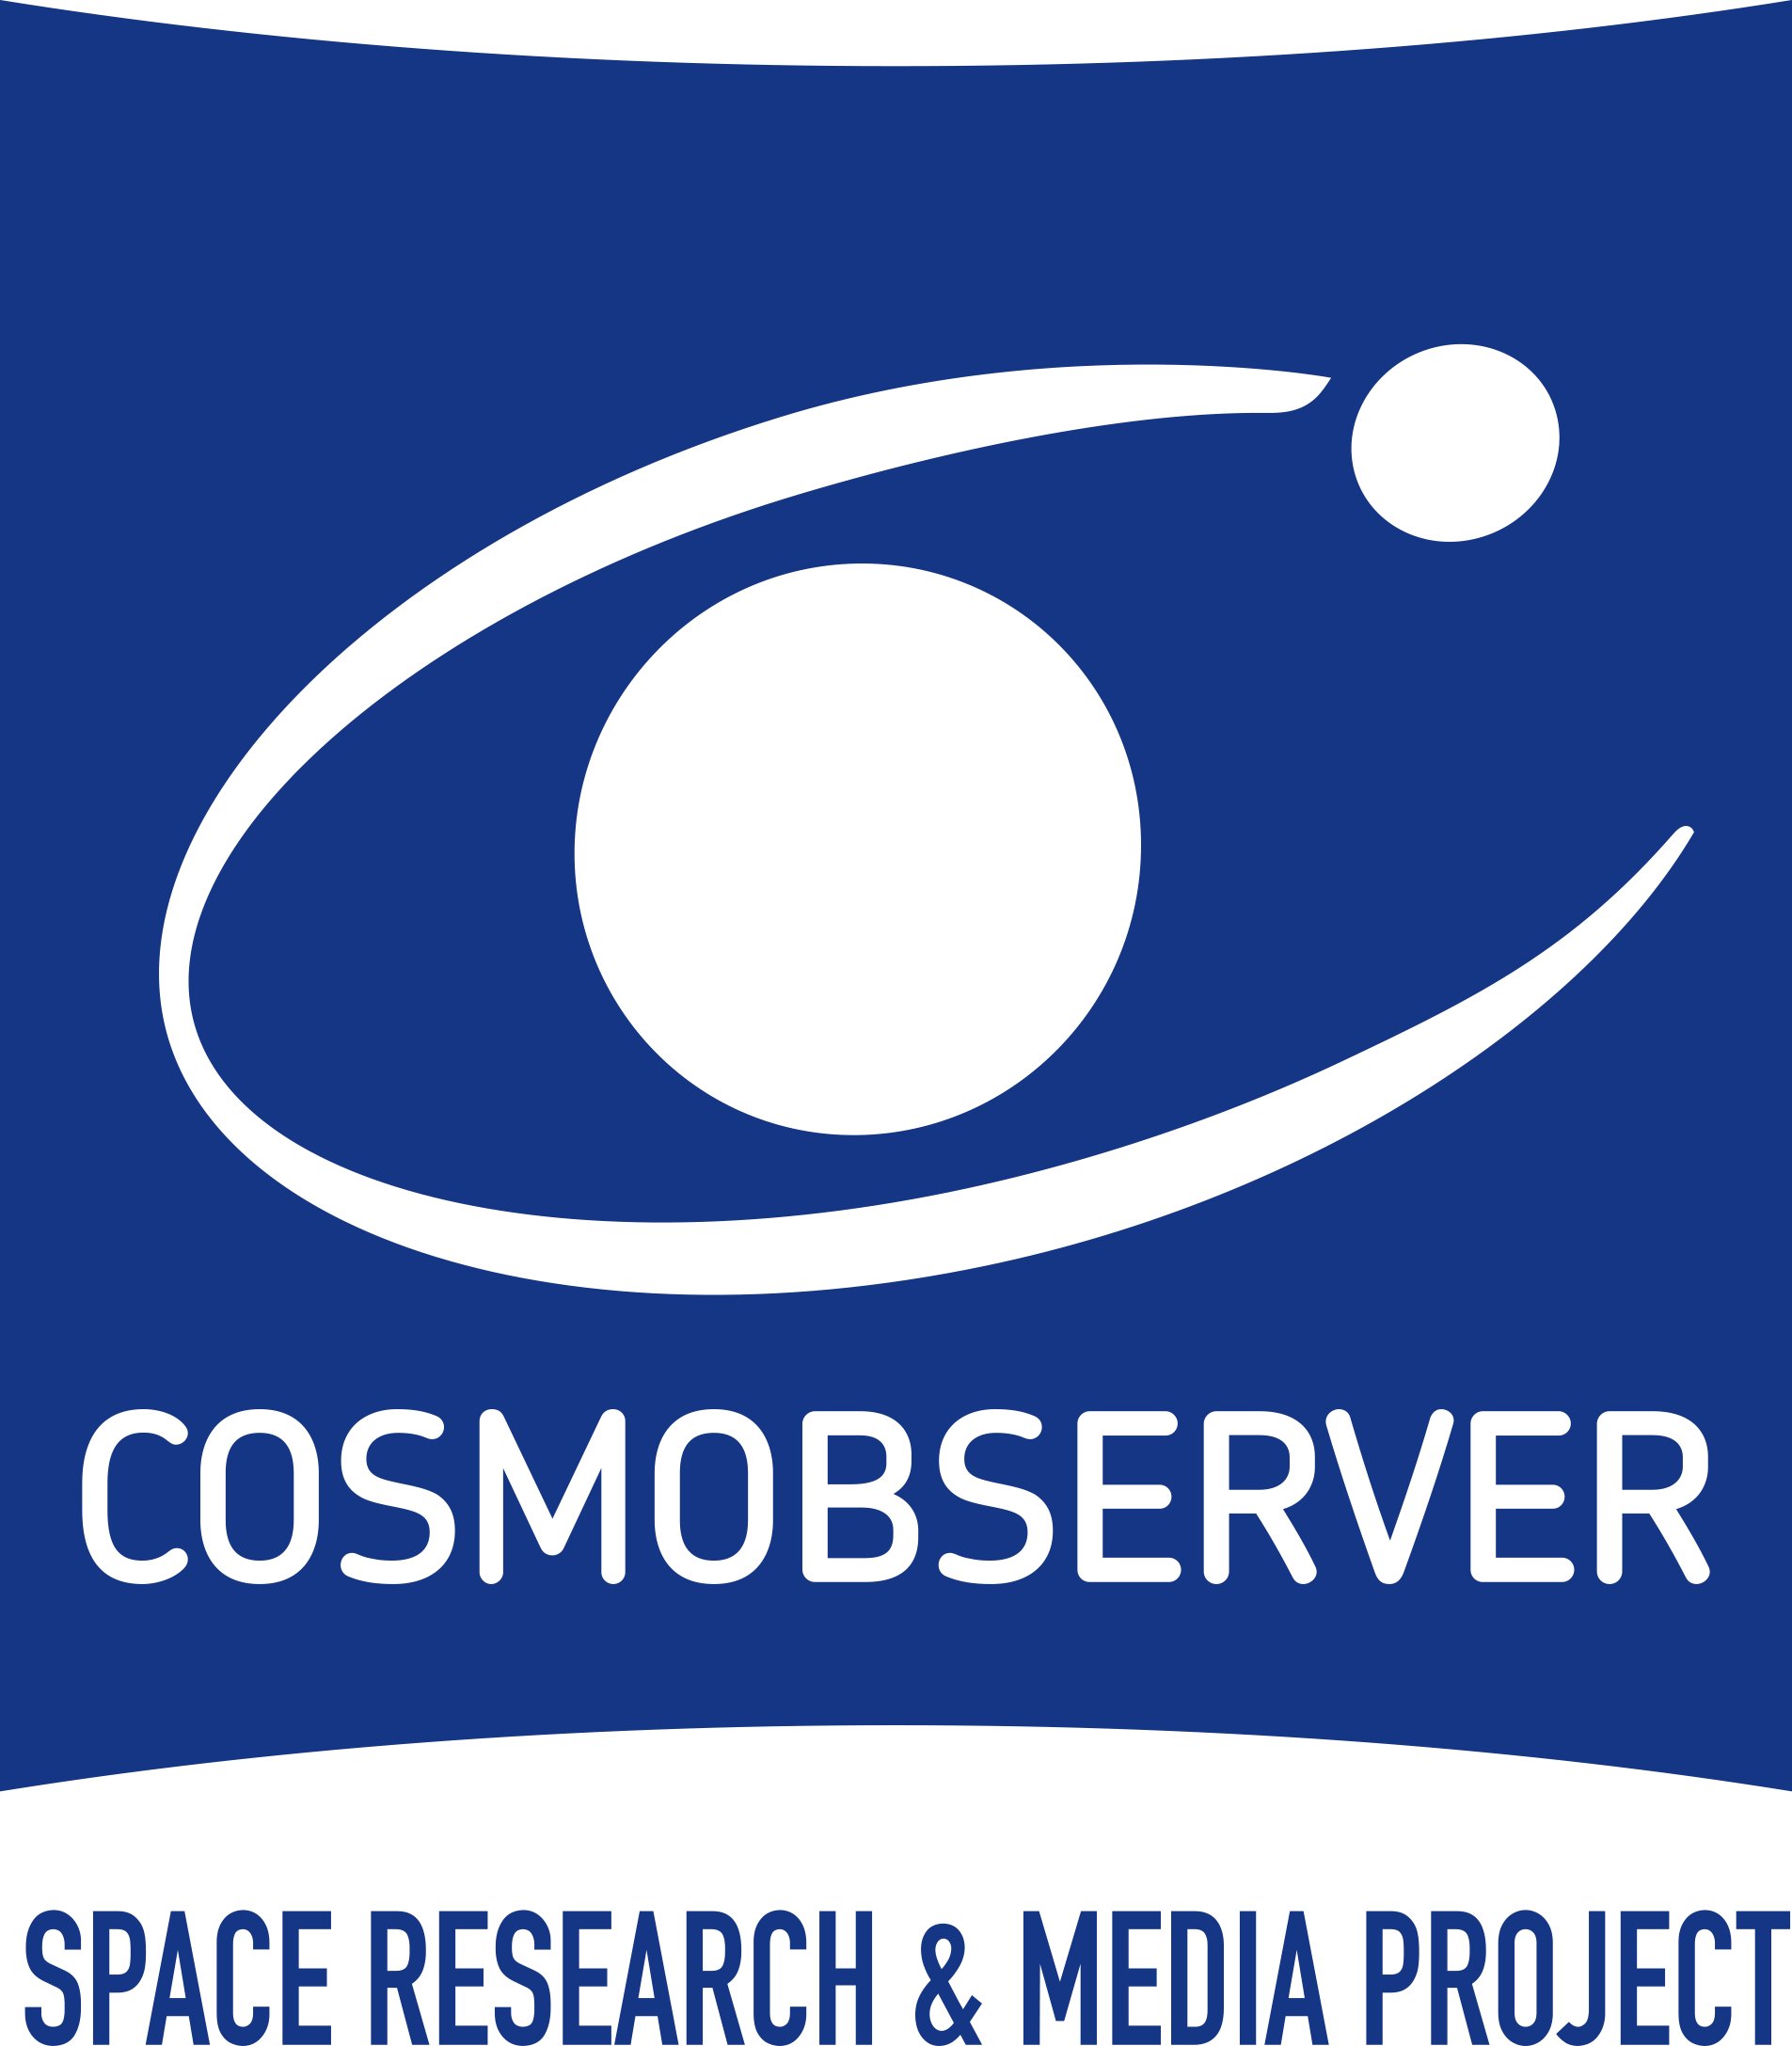 COSMOBSERVER pubblica il calendario degli eventi astronomici e astronautici del 2019